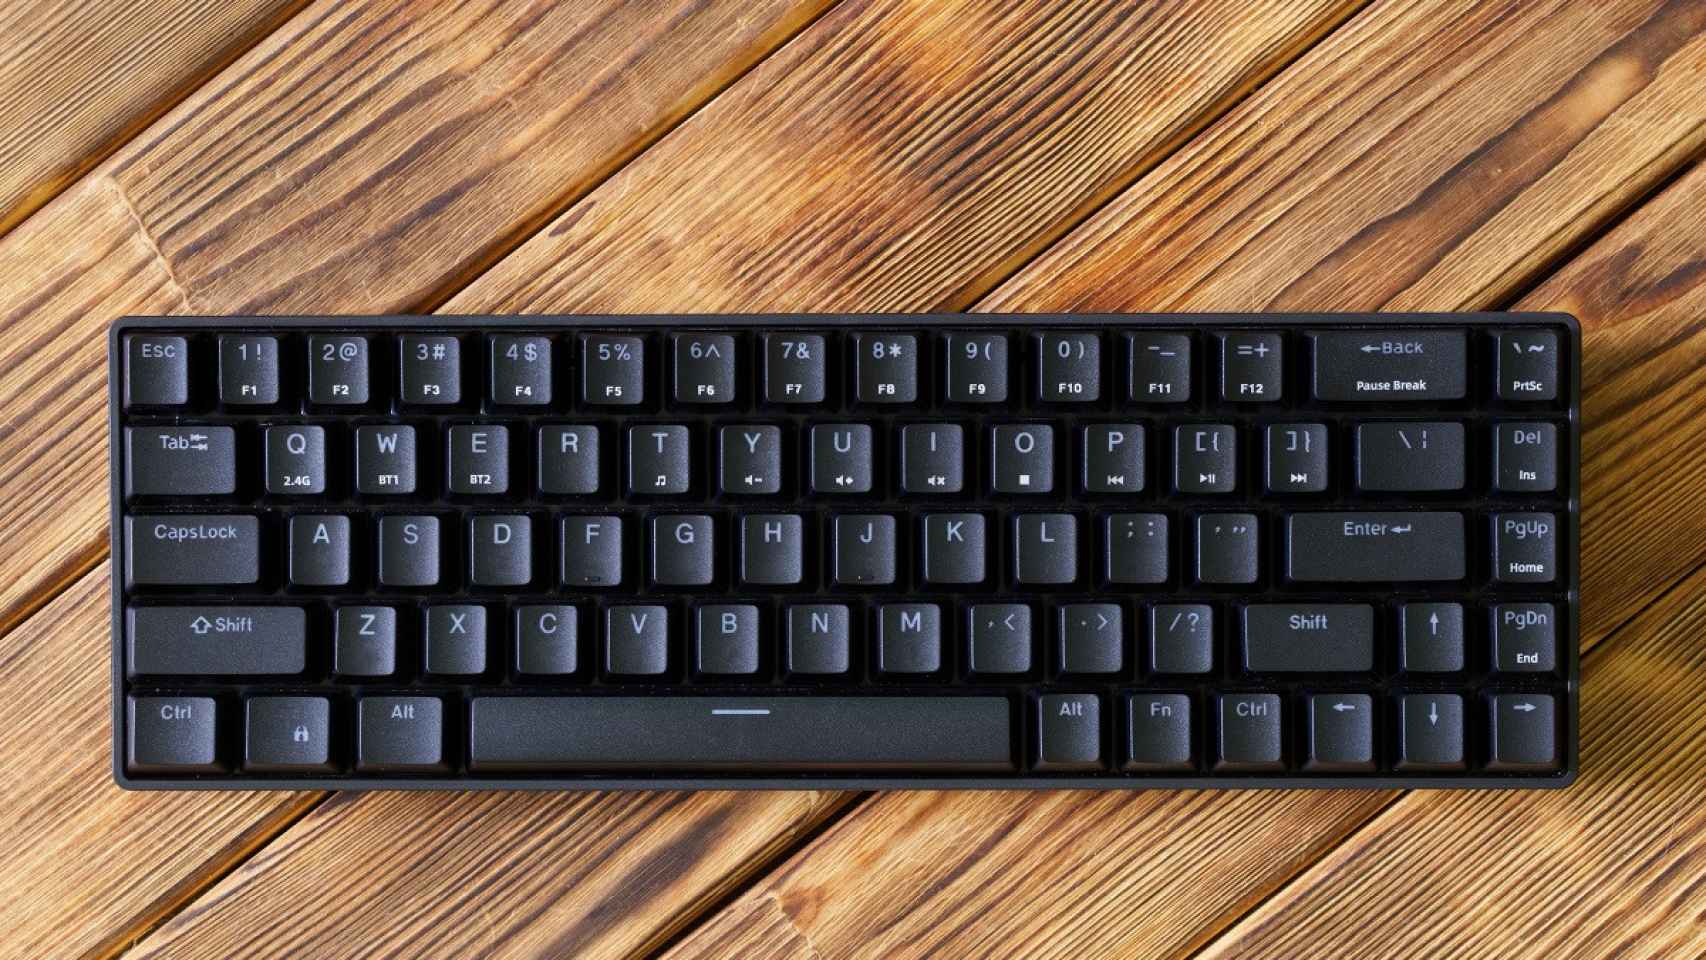 Guía practica para comprar el mejor teclado de ordenador